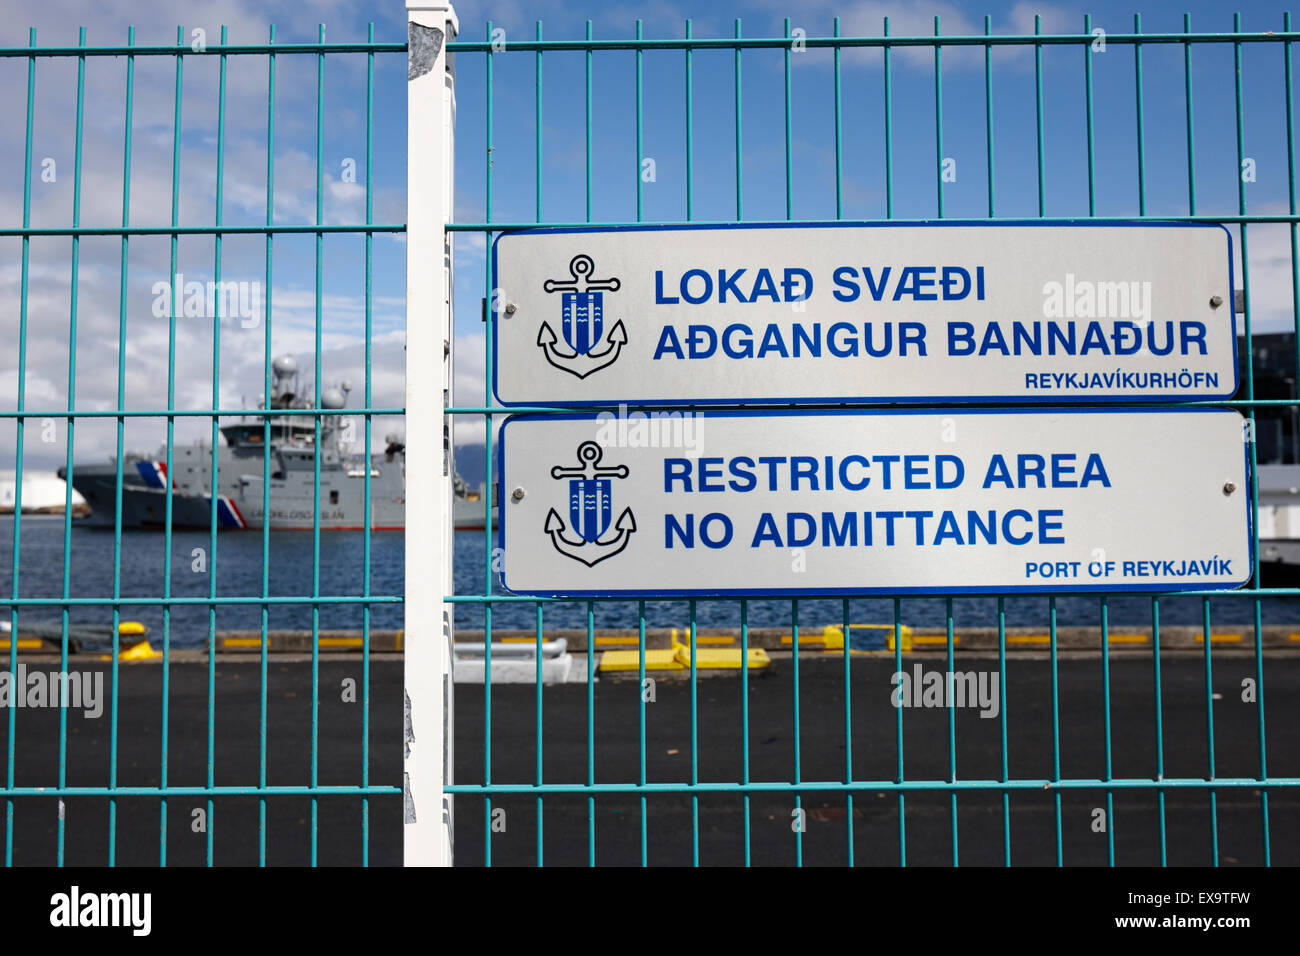 Port de port de Reykjavik zone réglementée avec des navires garde-côtes derrière l'islande Banque D'Images